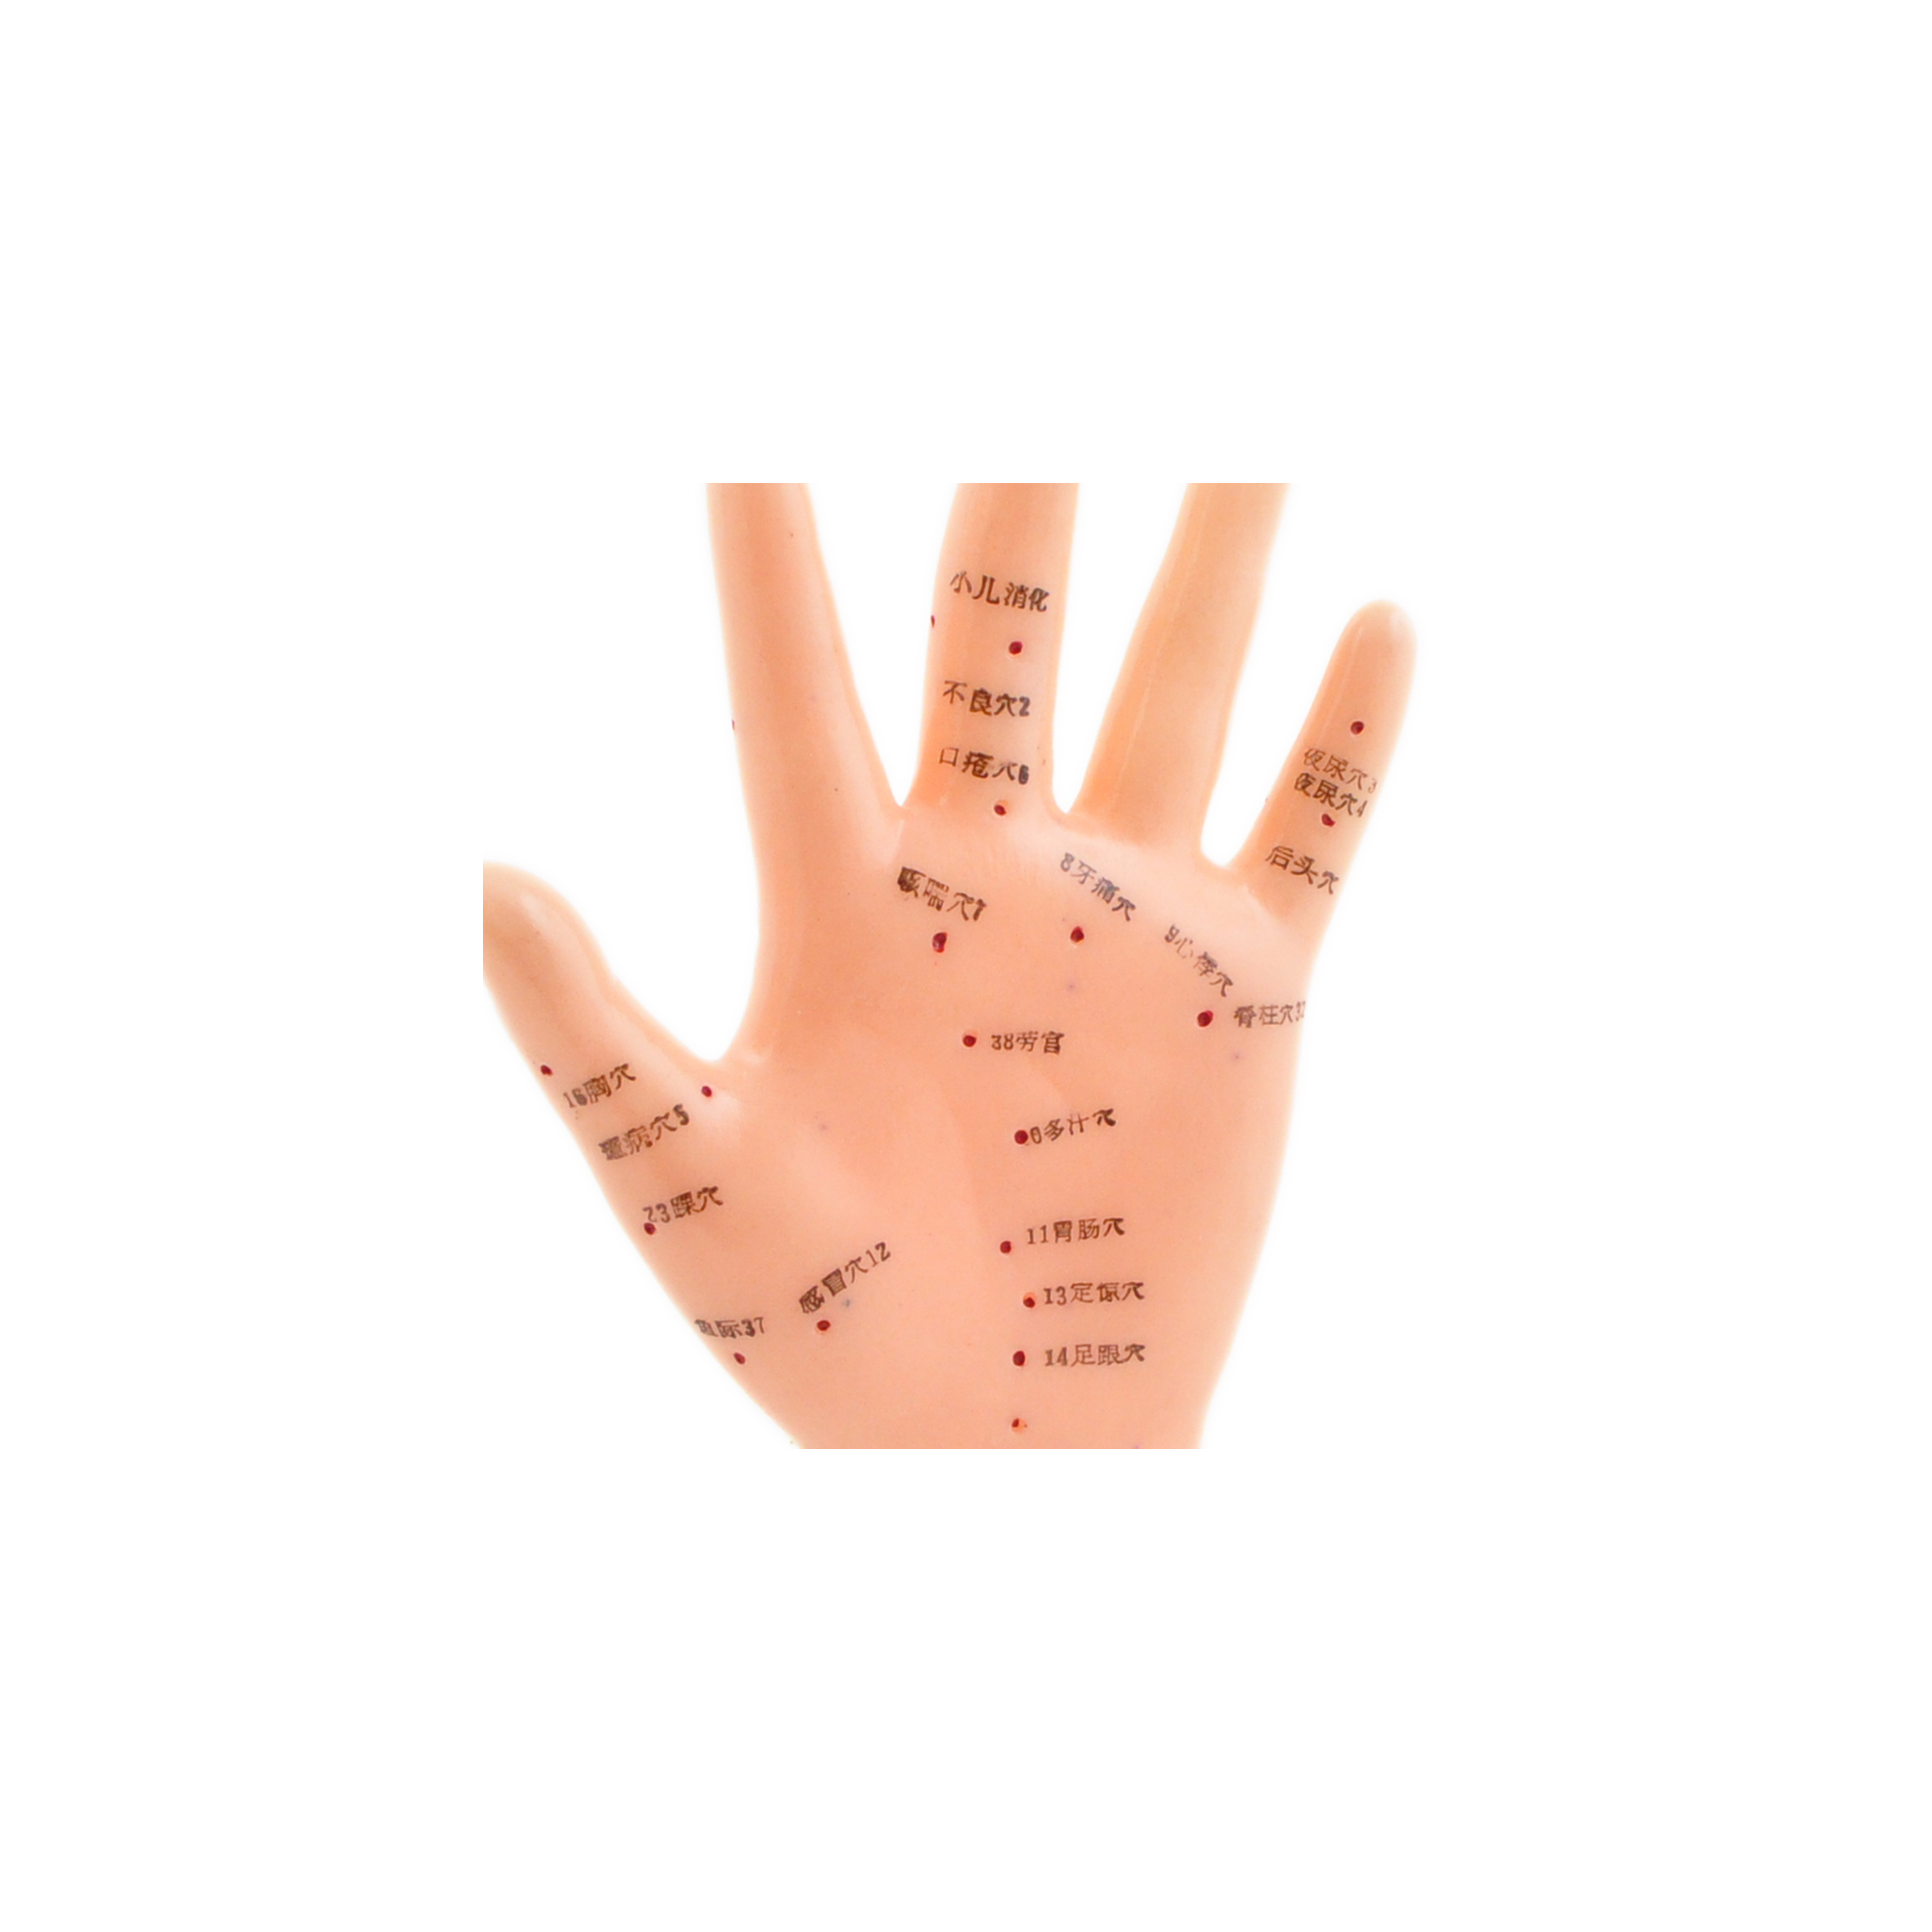 5049_Akupunkturmodell_menschliche Hand_weiblich_Handfläche_Zoom.jpg